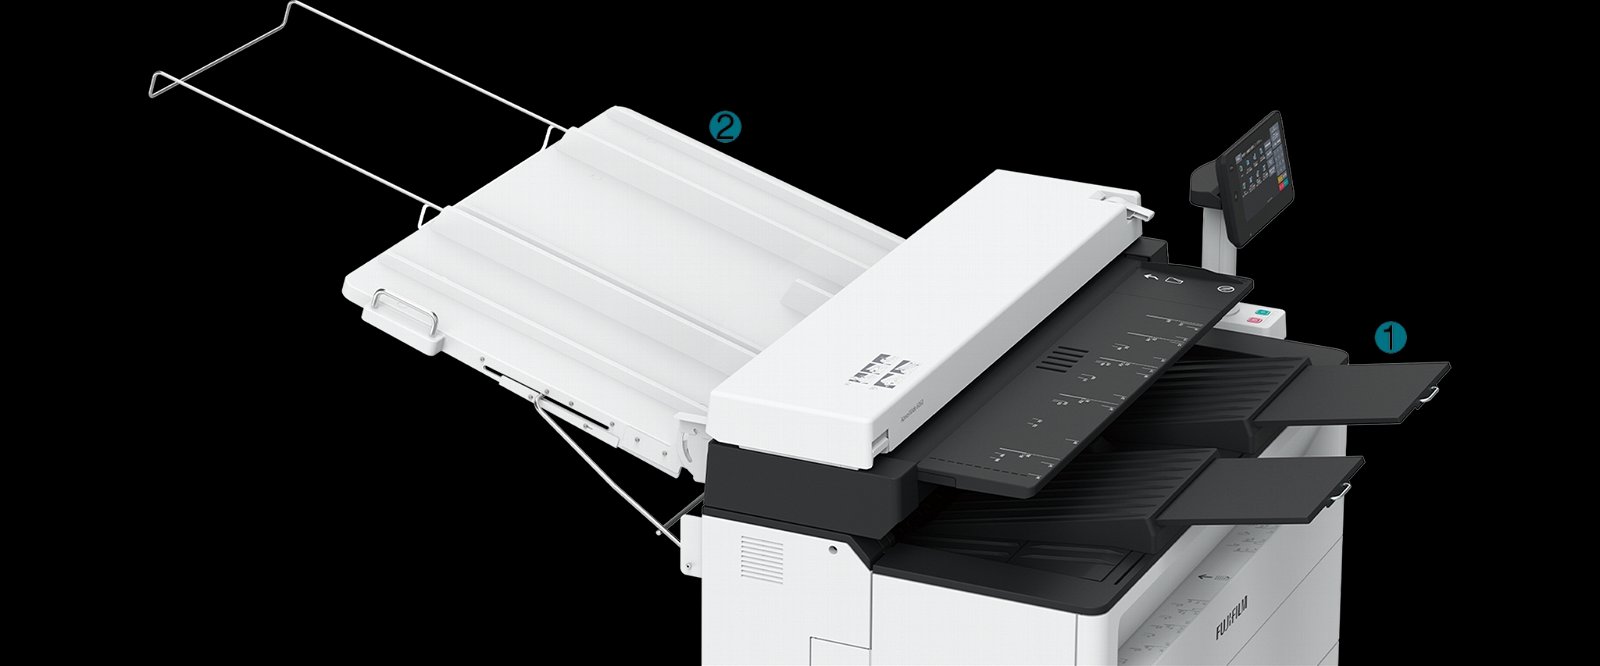 富士 AW6050   生產型圖紙機/藍圖機 2